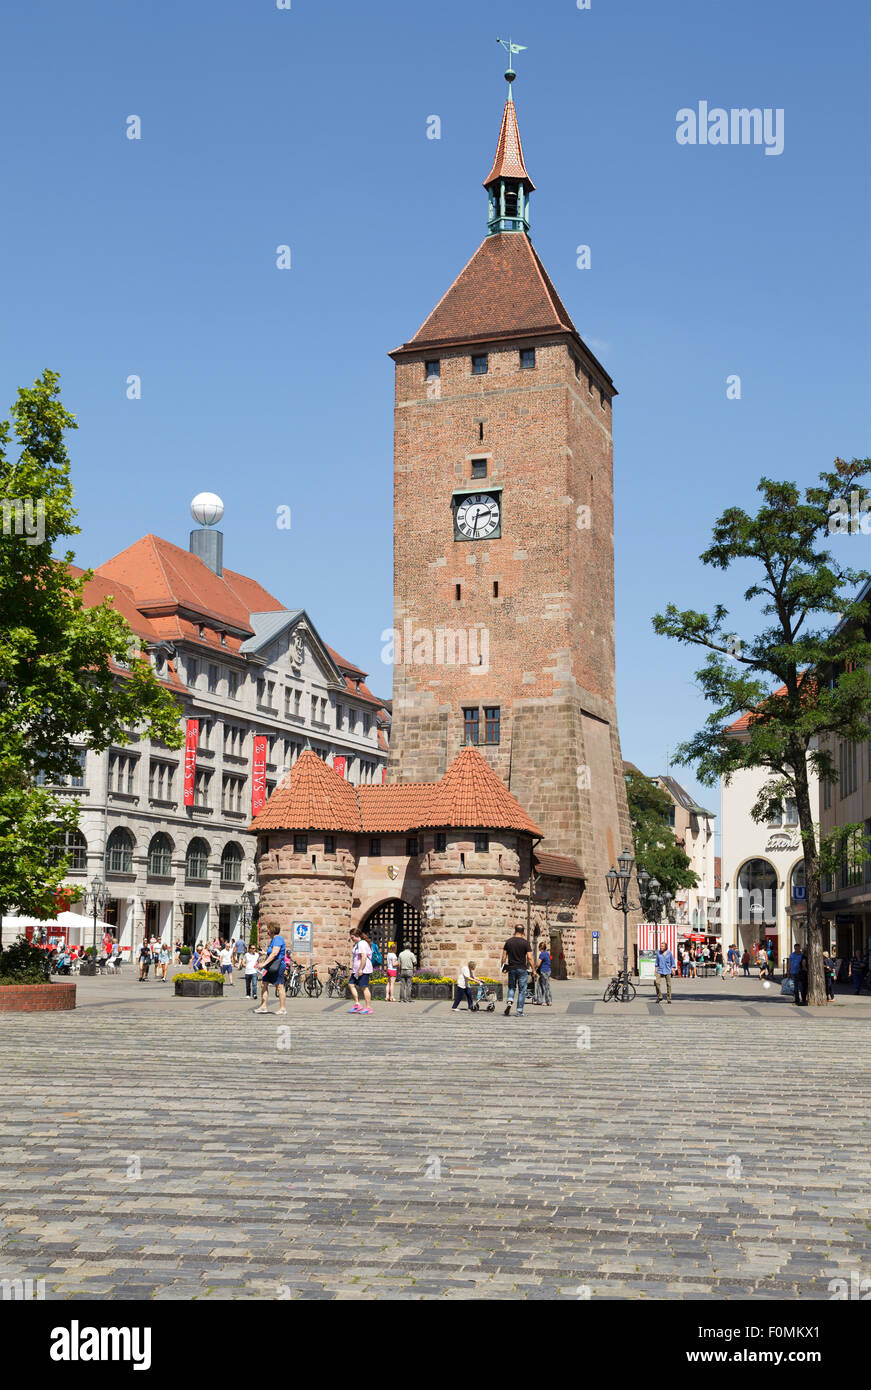 Weisser Turm Tour Blanche, Nuremberg, Bavière, Allemagne Banque D'Images